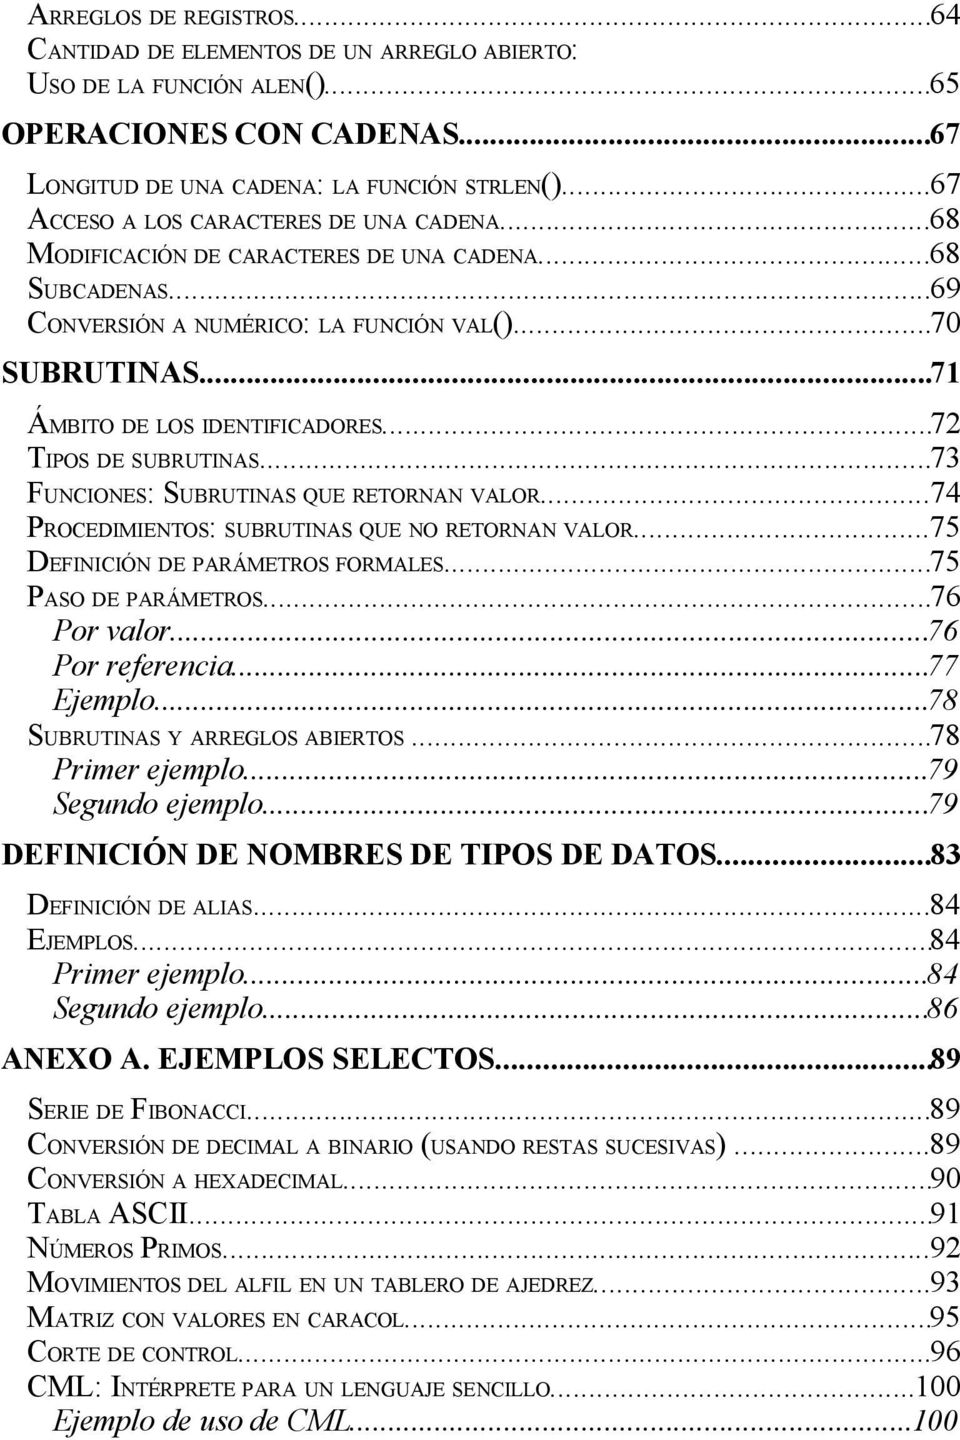 ..72 TIPOS DE SUBRUTINAS...73 FUNCIONES: SUBRUTINAS QUE RETORNAN VALOR...74 PROCEDIMIENTOS: SUBRUTINAS QUE NO RETORNAN VALOR...75 DEFINICIÓN DE PARÁMETROS FORMALES...75 PASO DE PARÁMETROS.